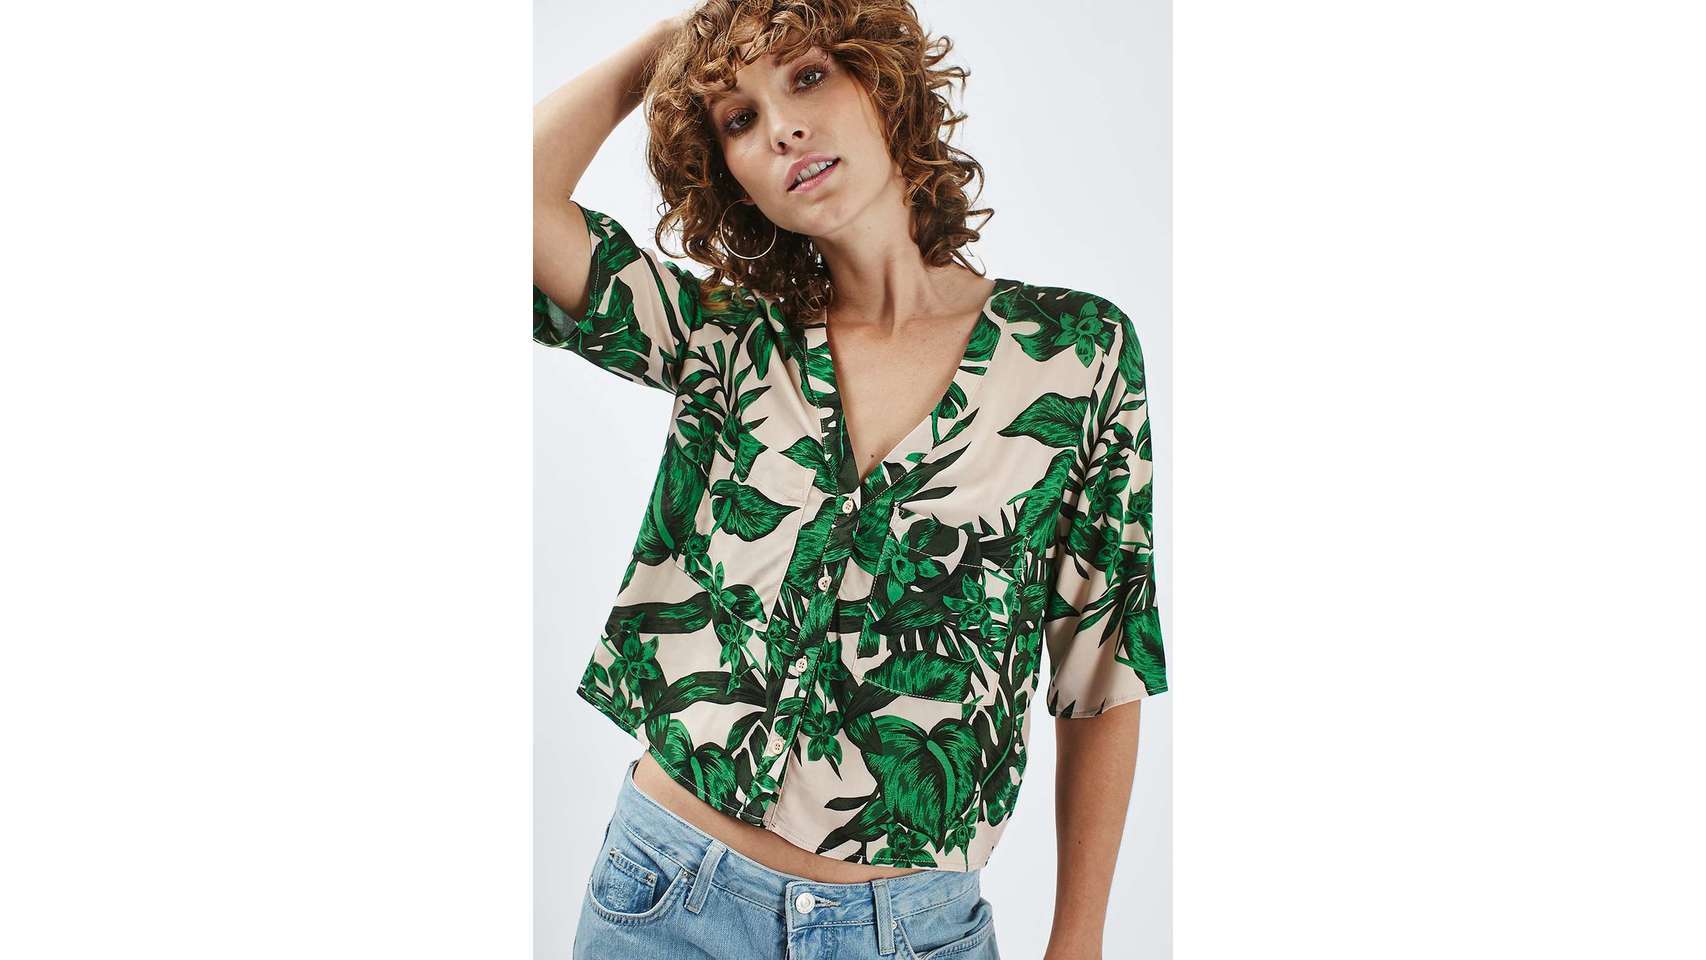 Camisa tropical de Top Shop (42,00 euros).